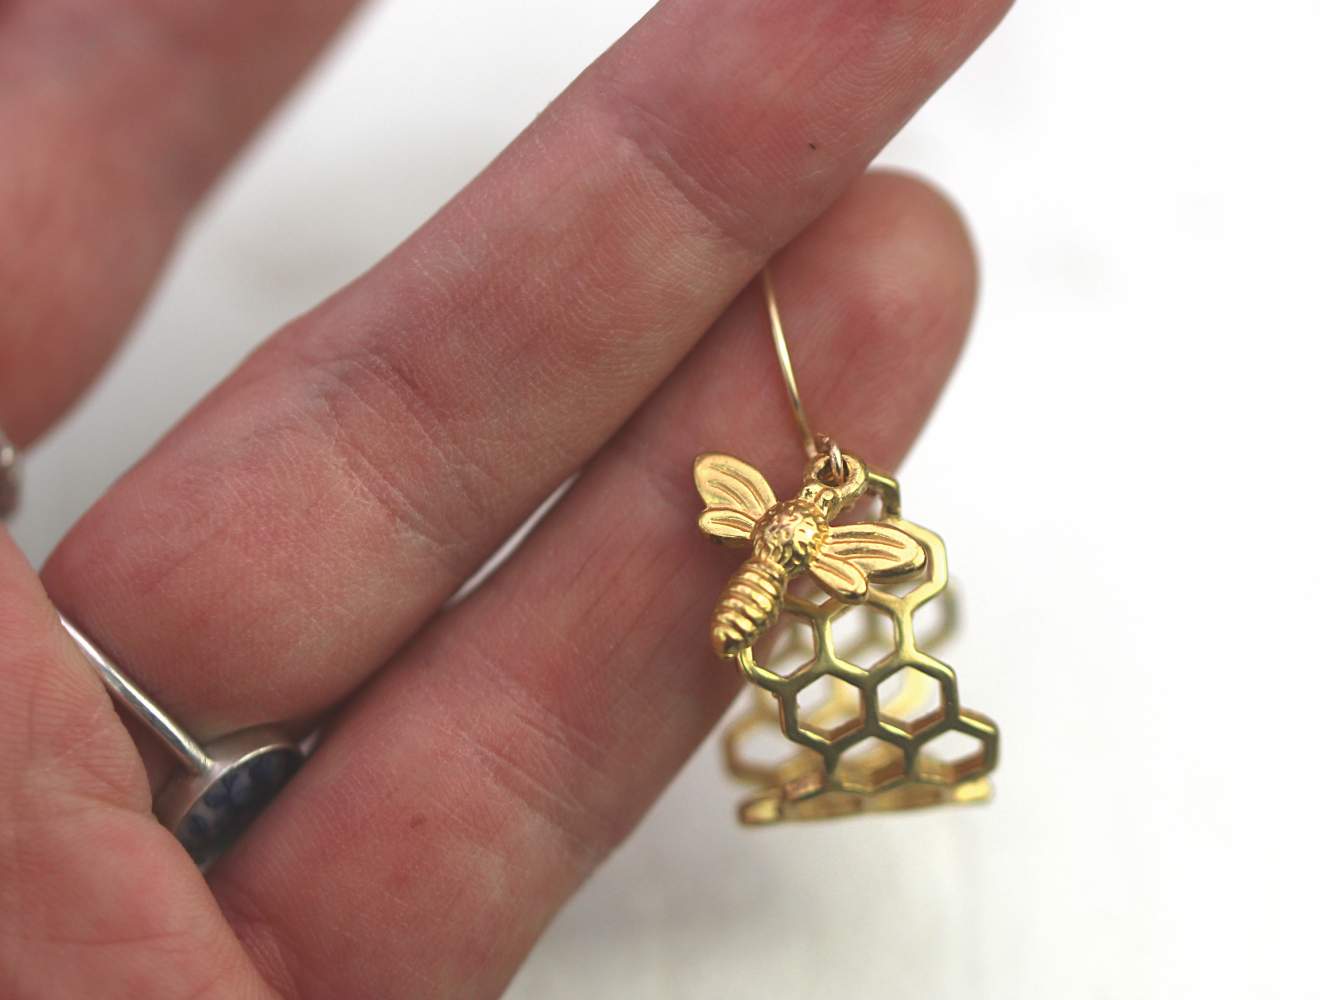 Bienen Waben Ohrringe, antikgold emailliert mit kleiner Biene